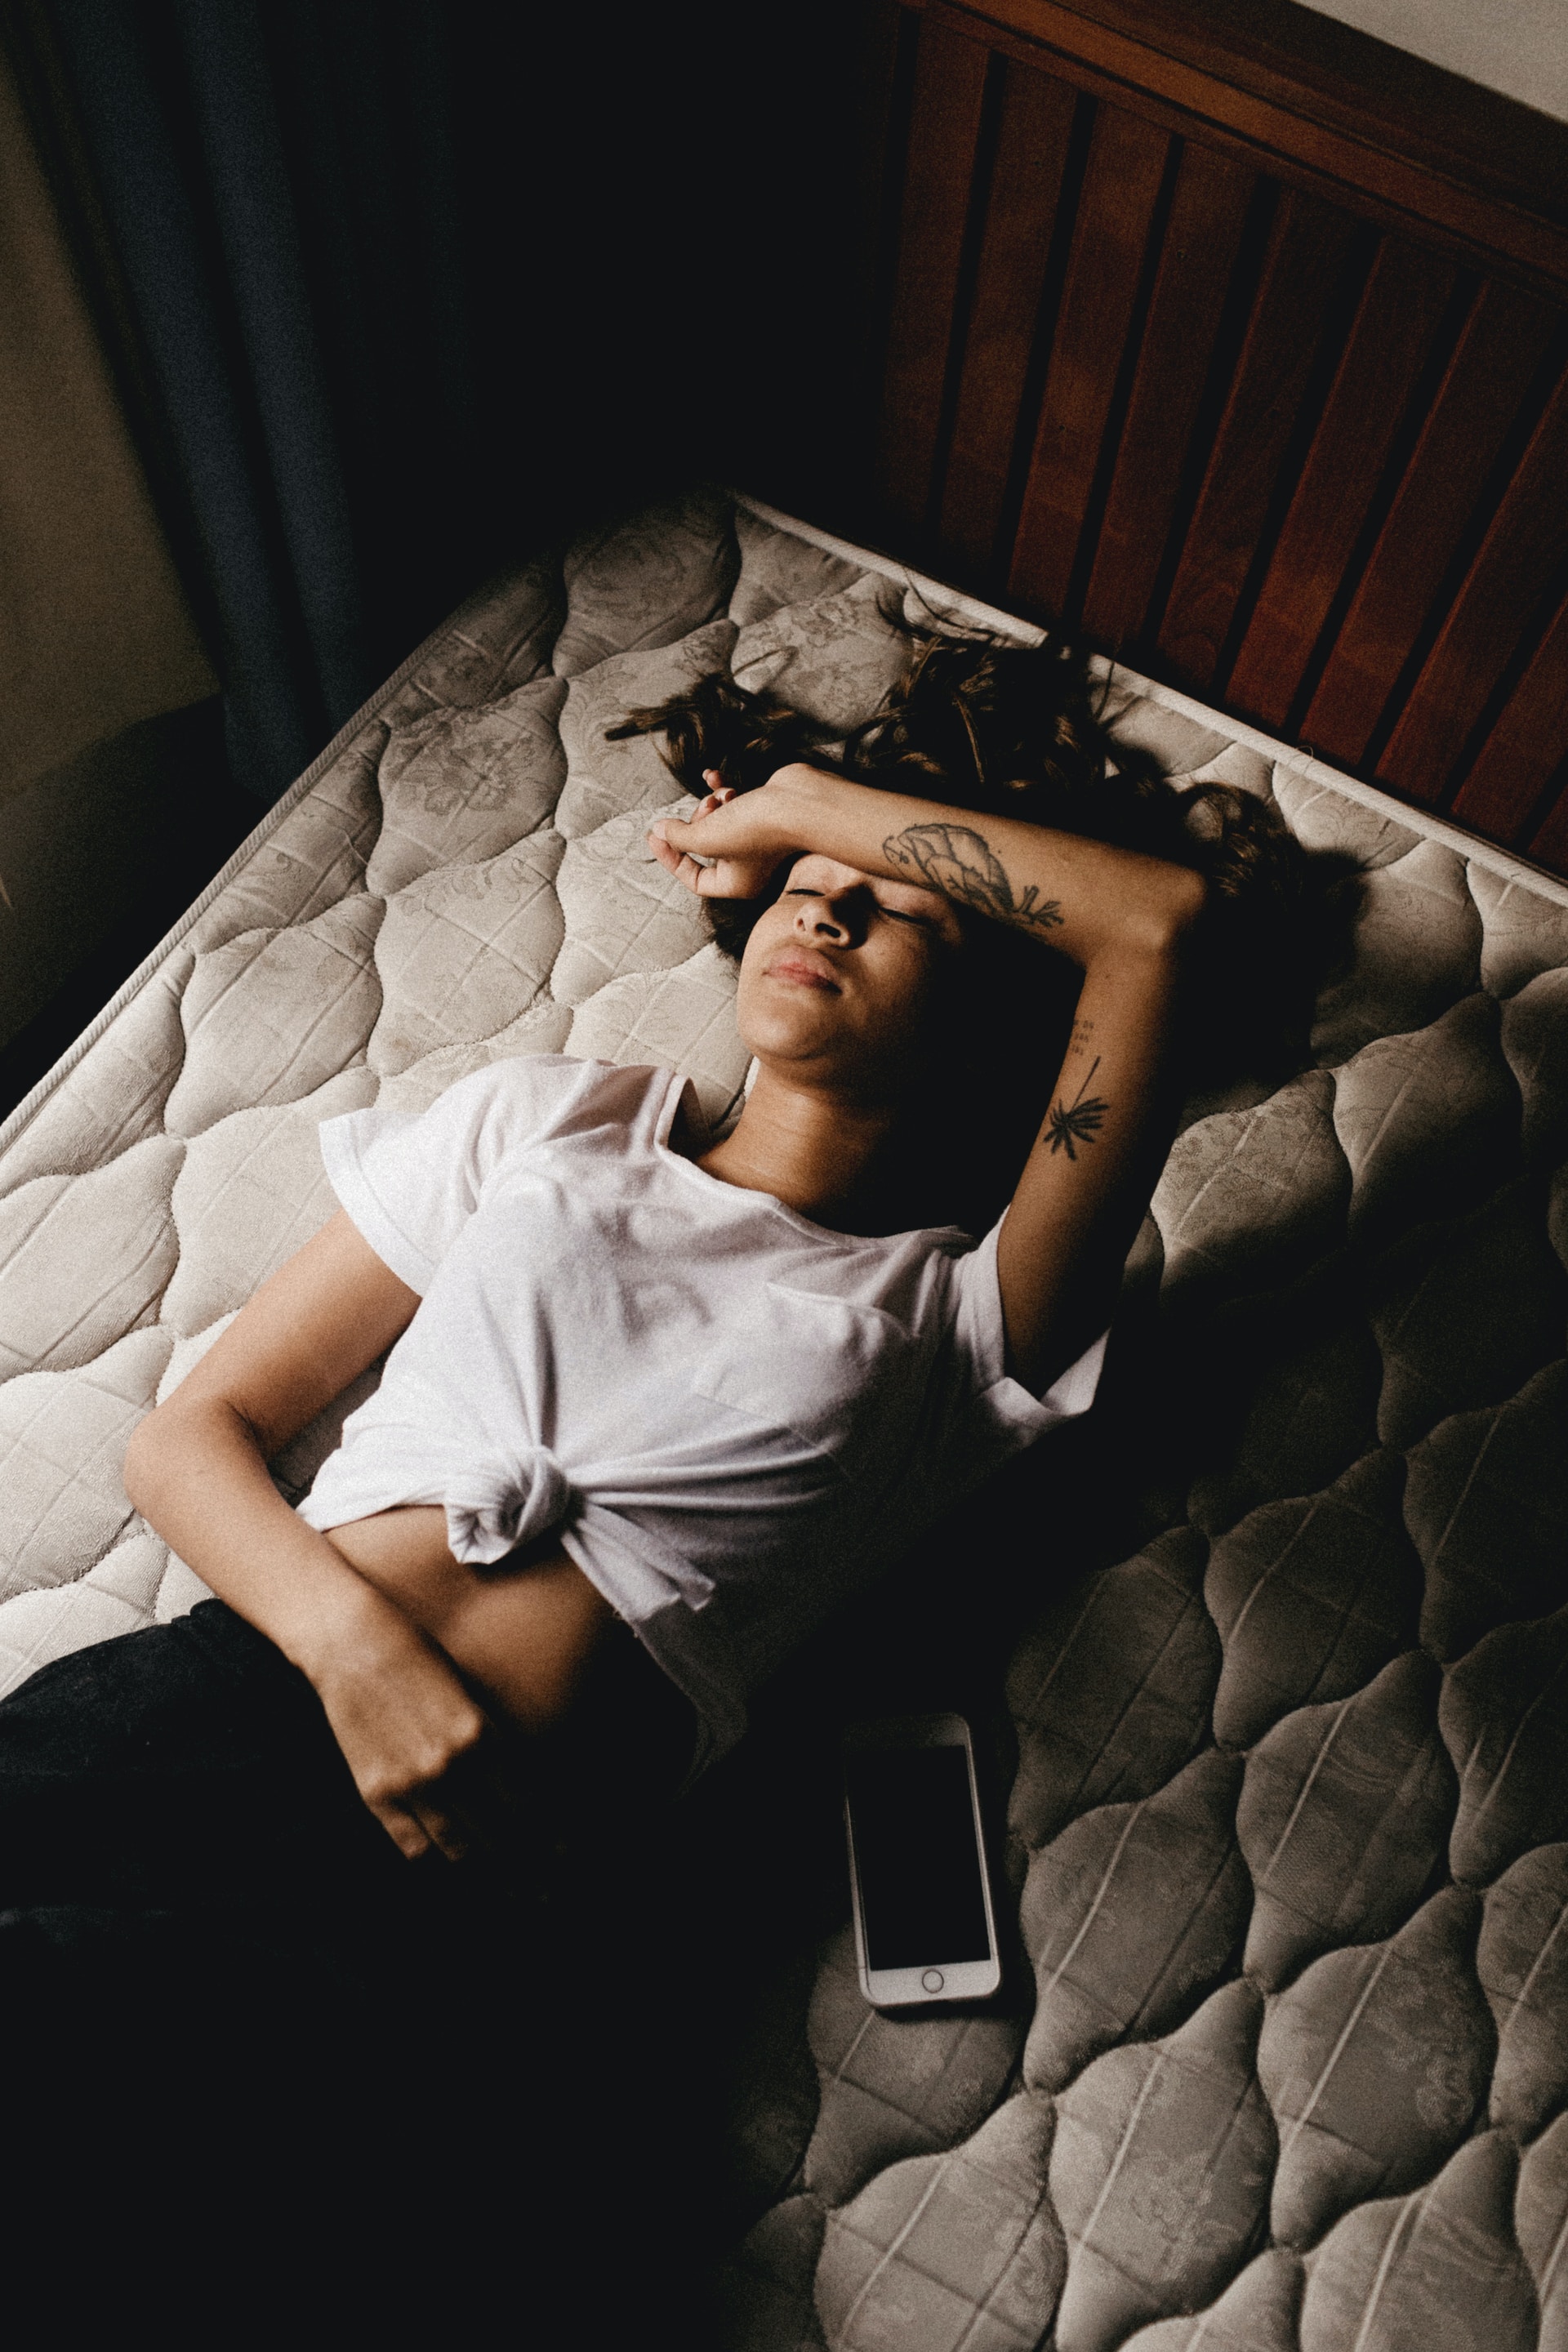 Вредно ли спать с телефоном под подушкой?